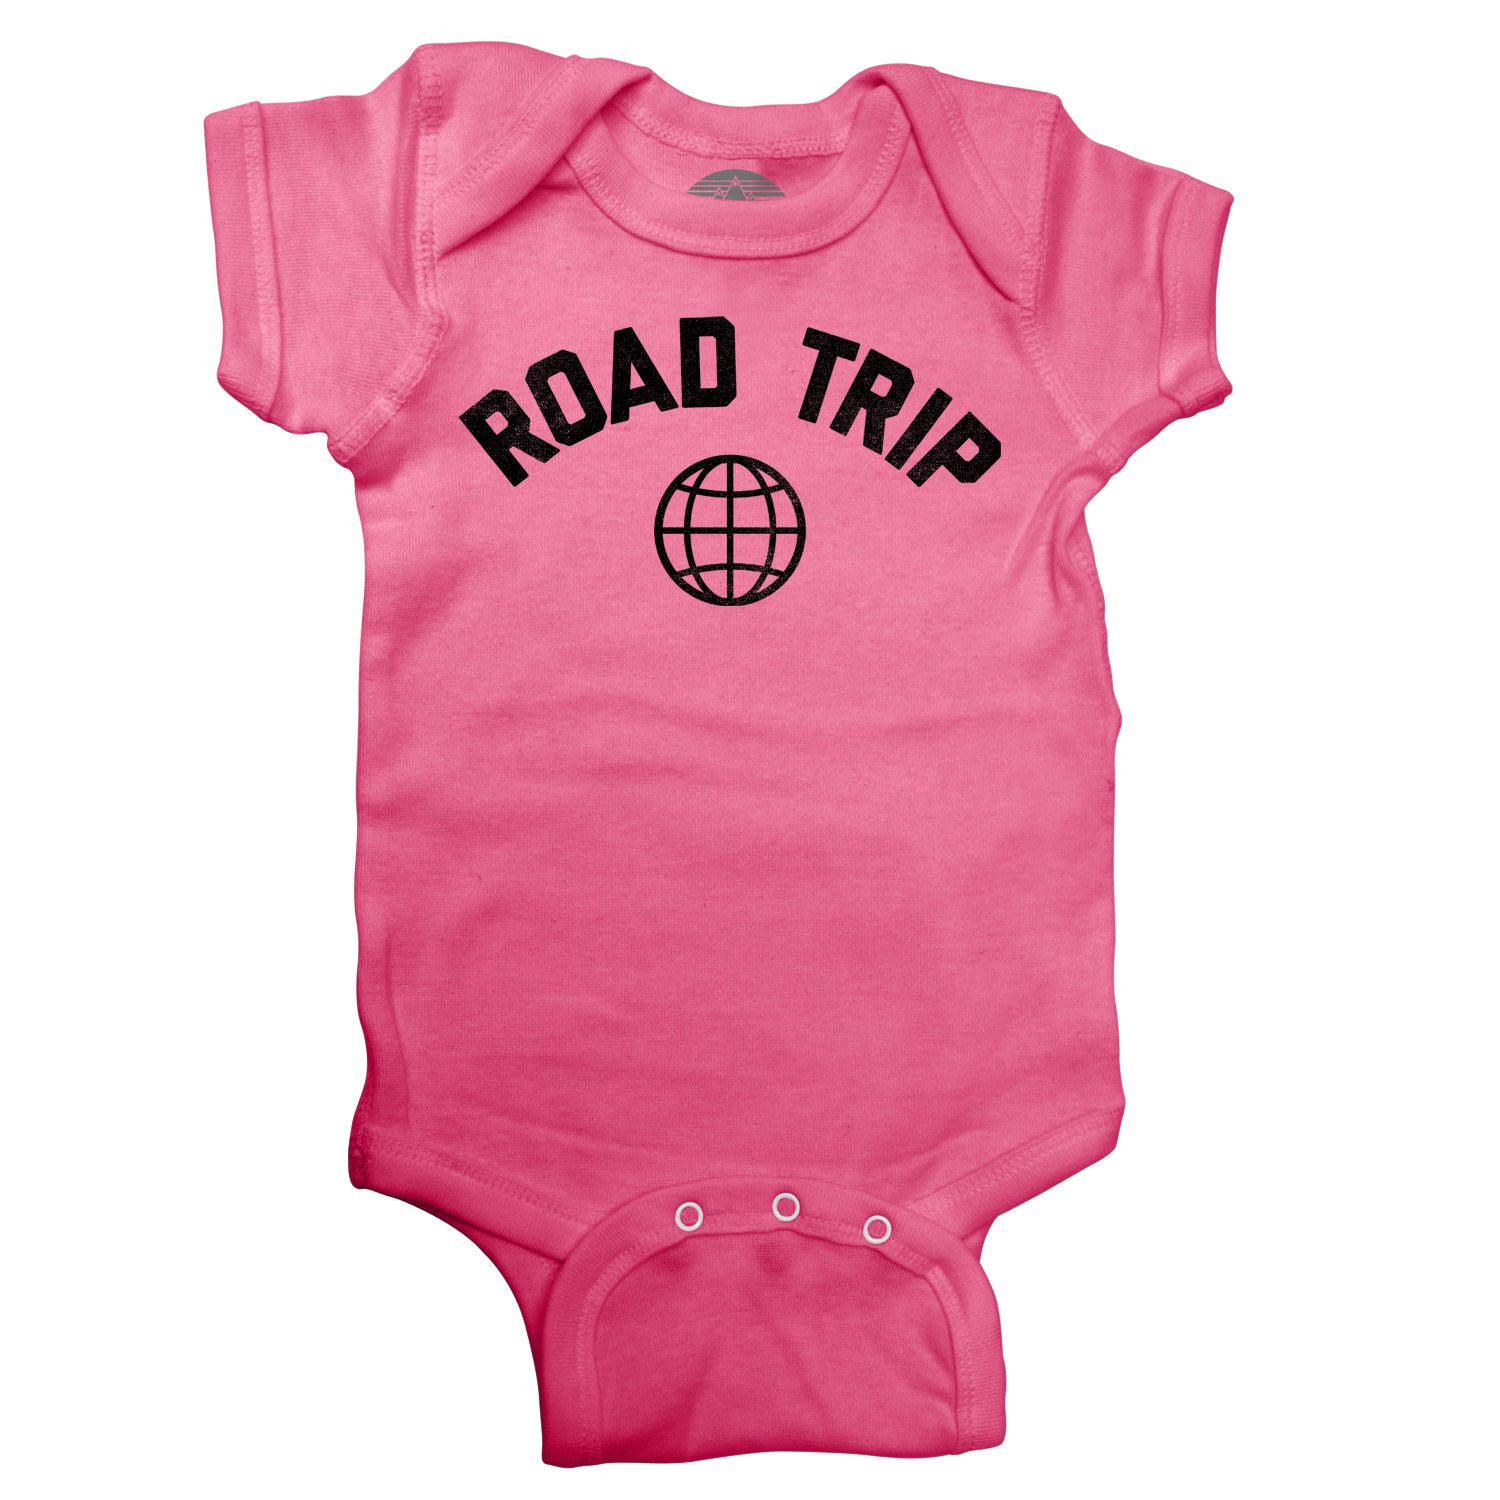 Road Trip Infant Bodysuit - Unisex Fit